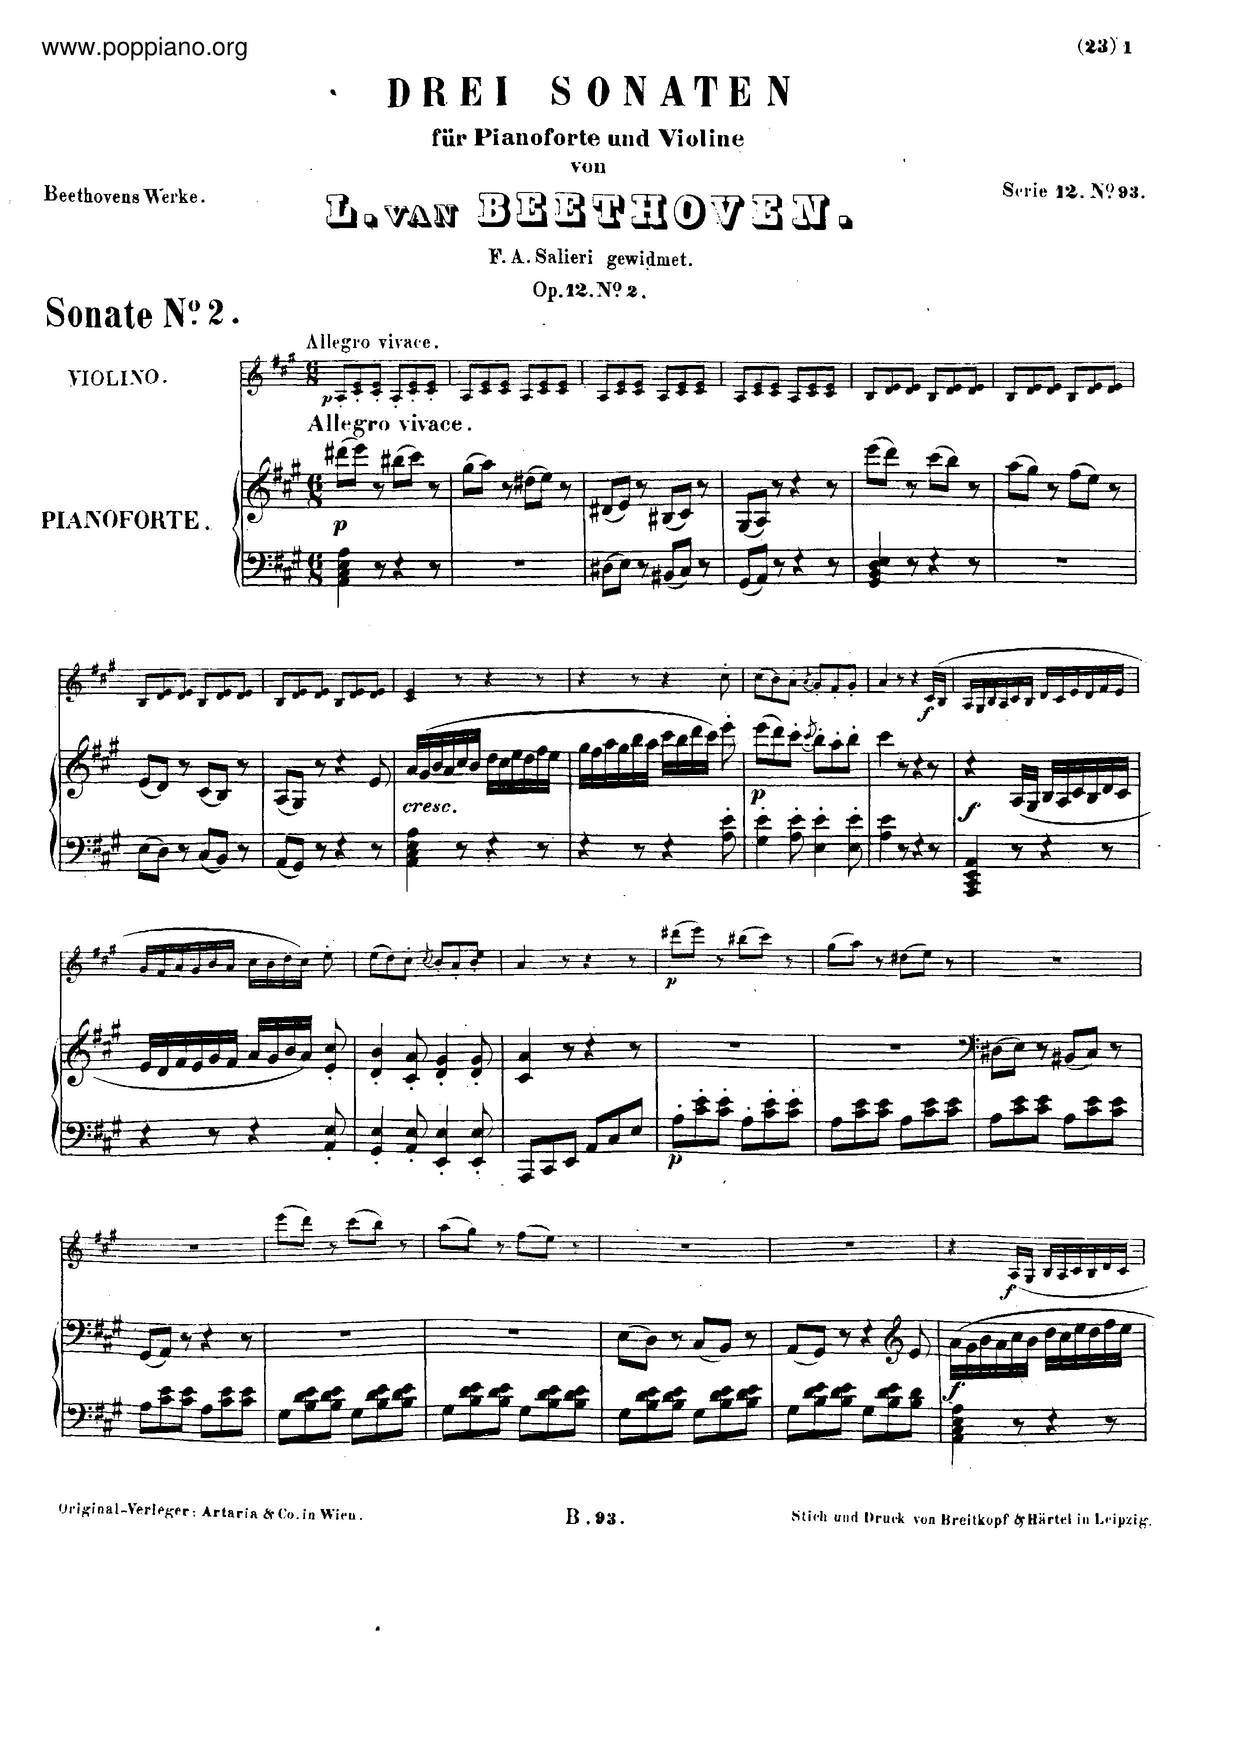 Violin Sonata No. 2, Op. 12 No. 2 Score